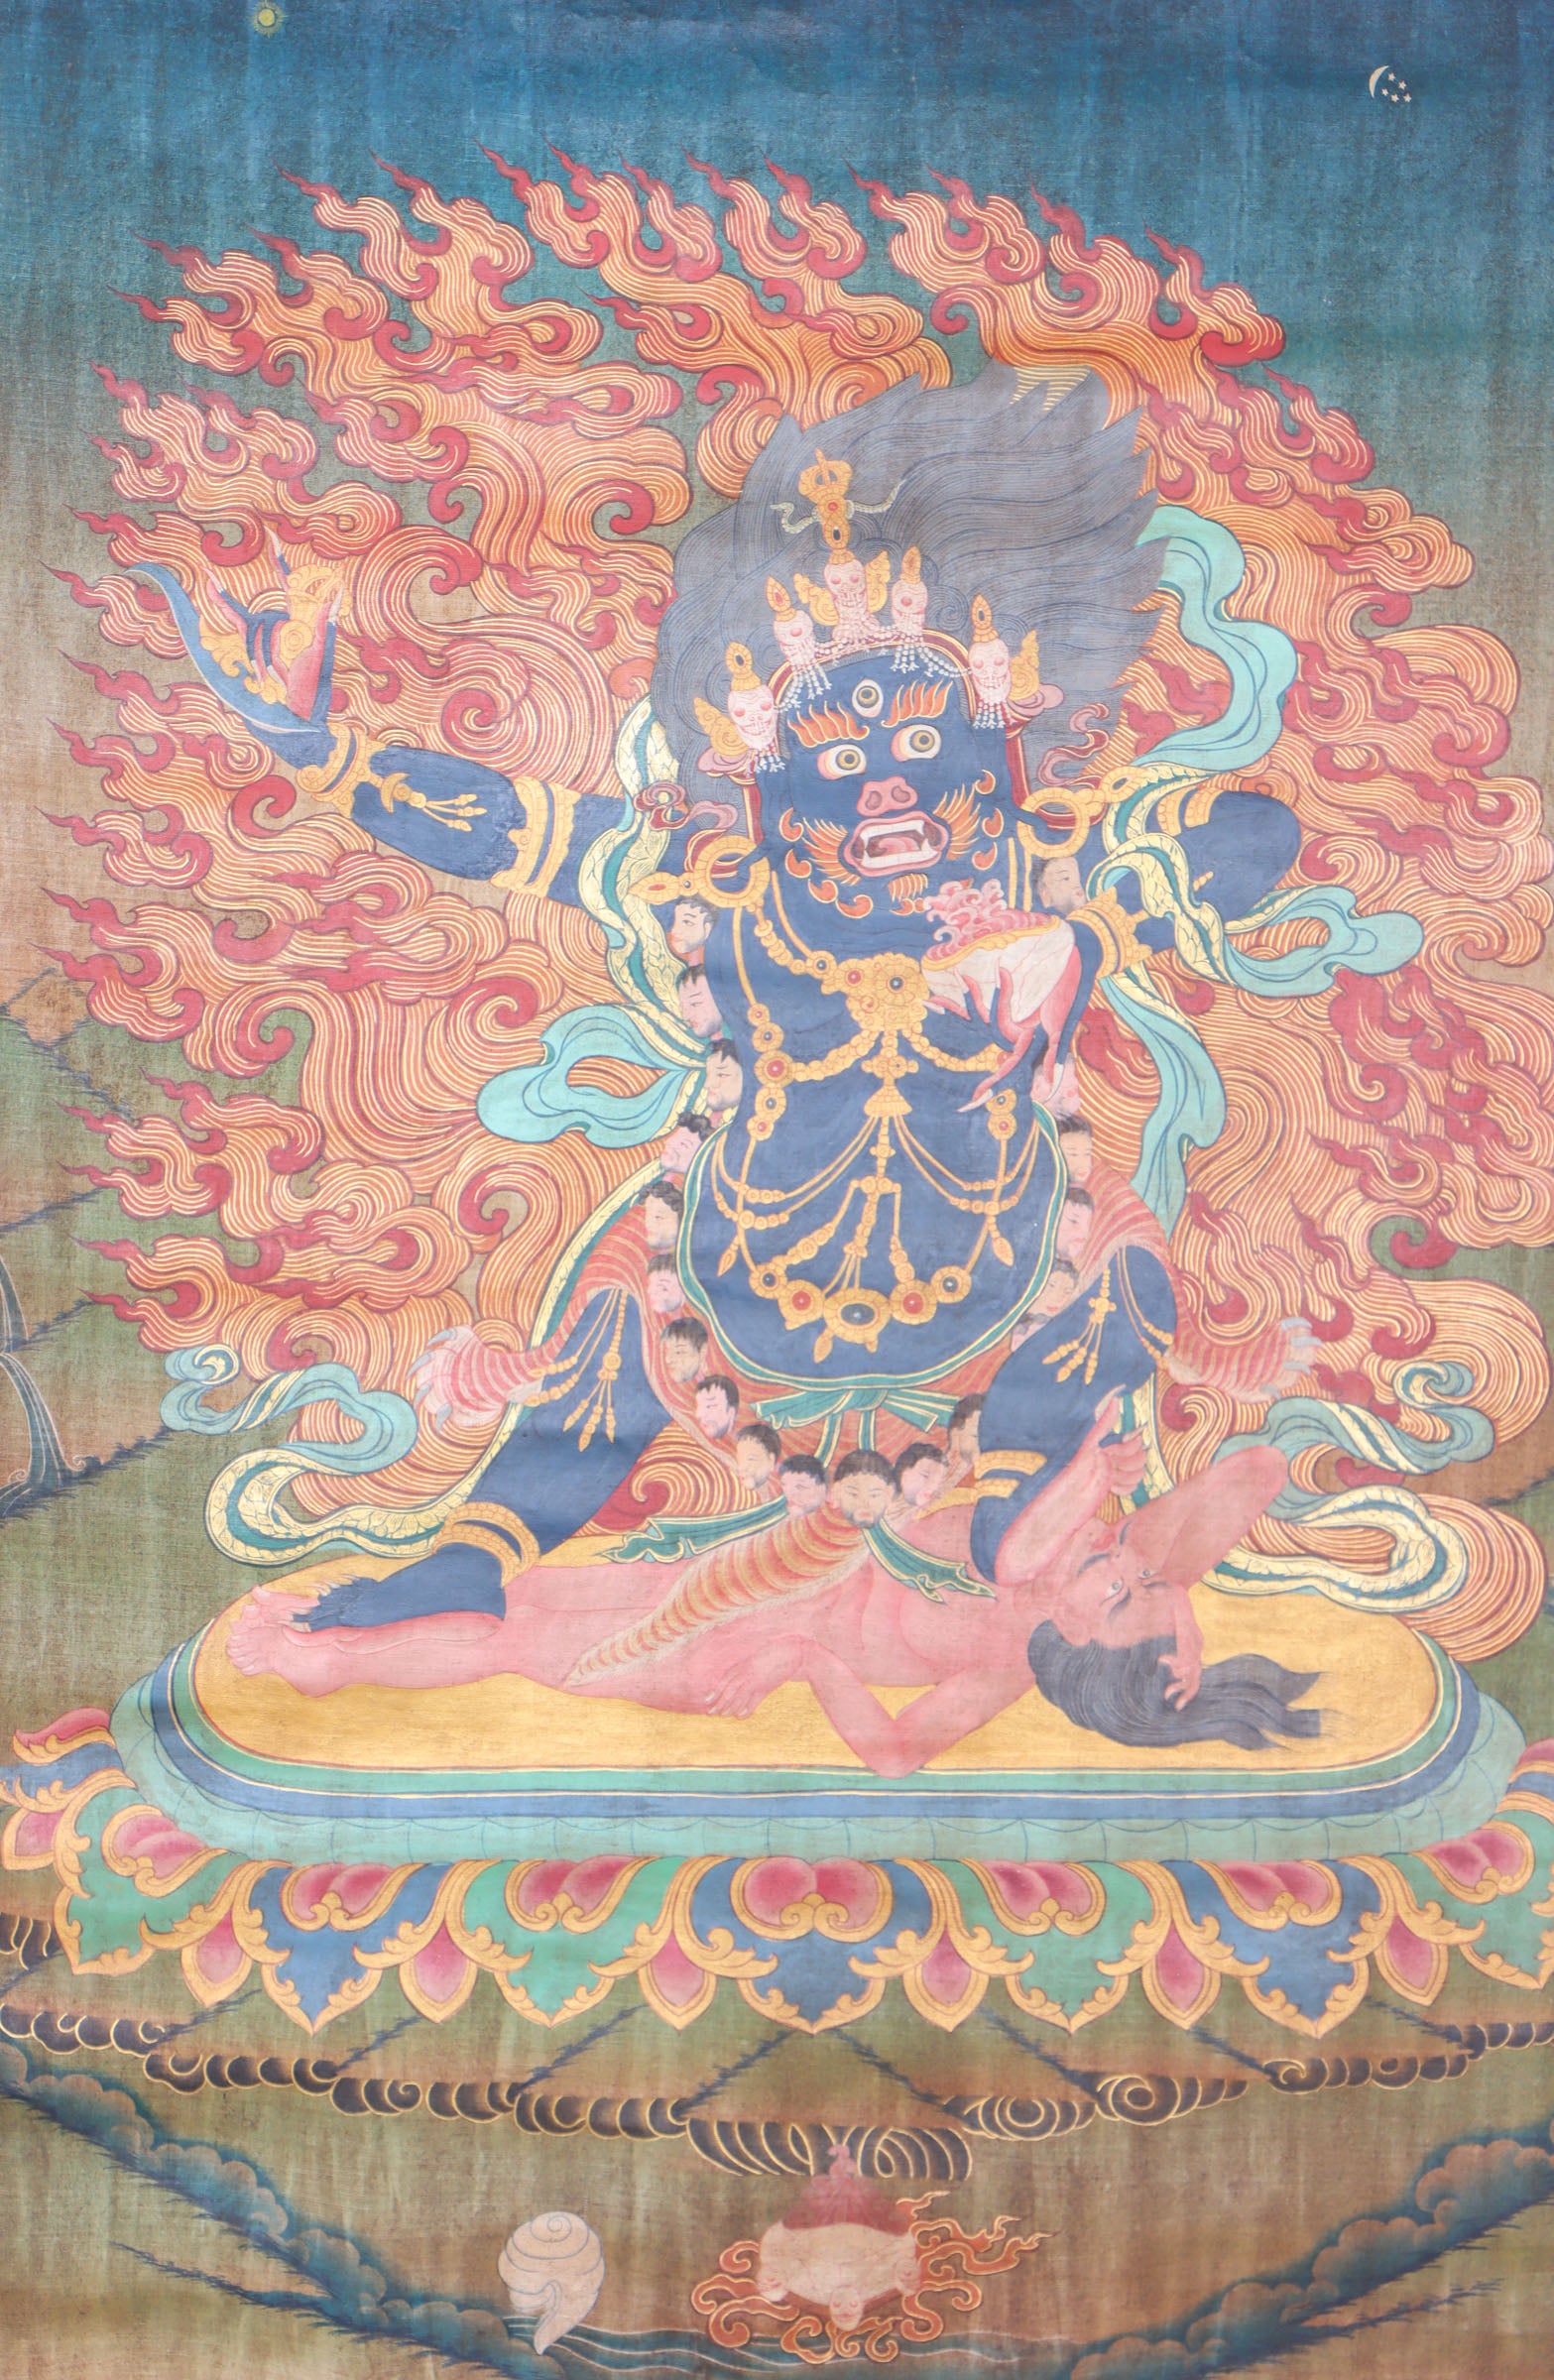 Mahakala Thangka for Protection and meditation.